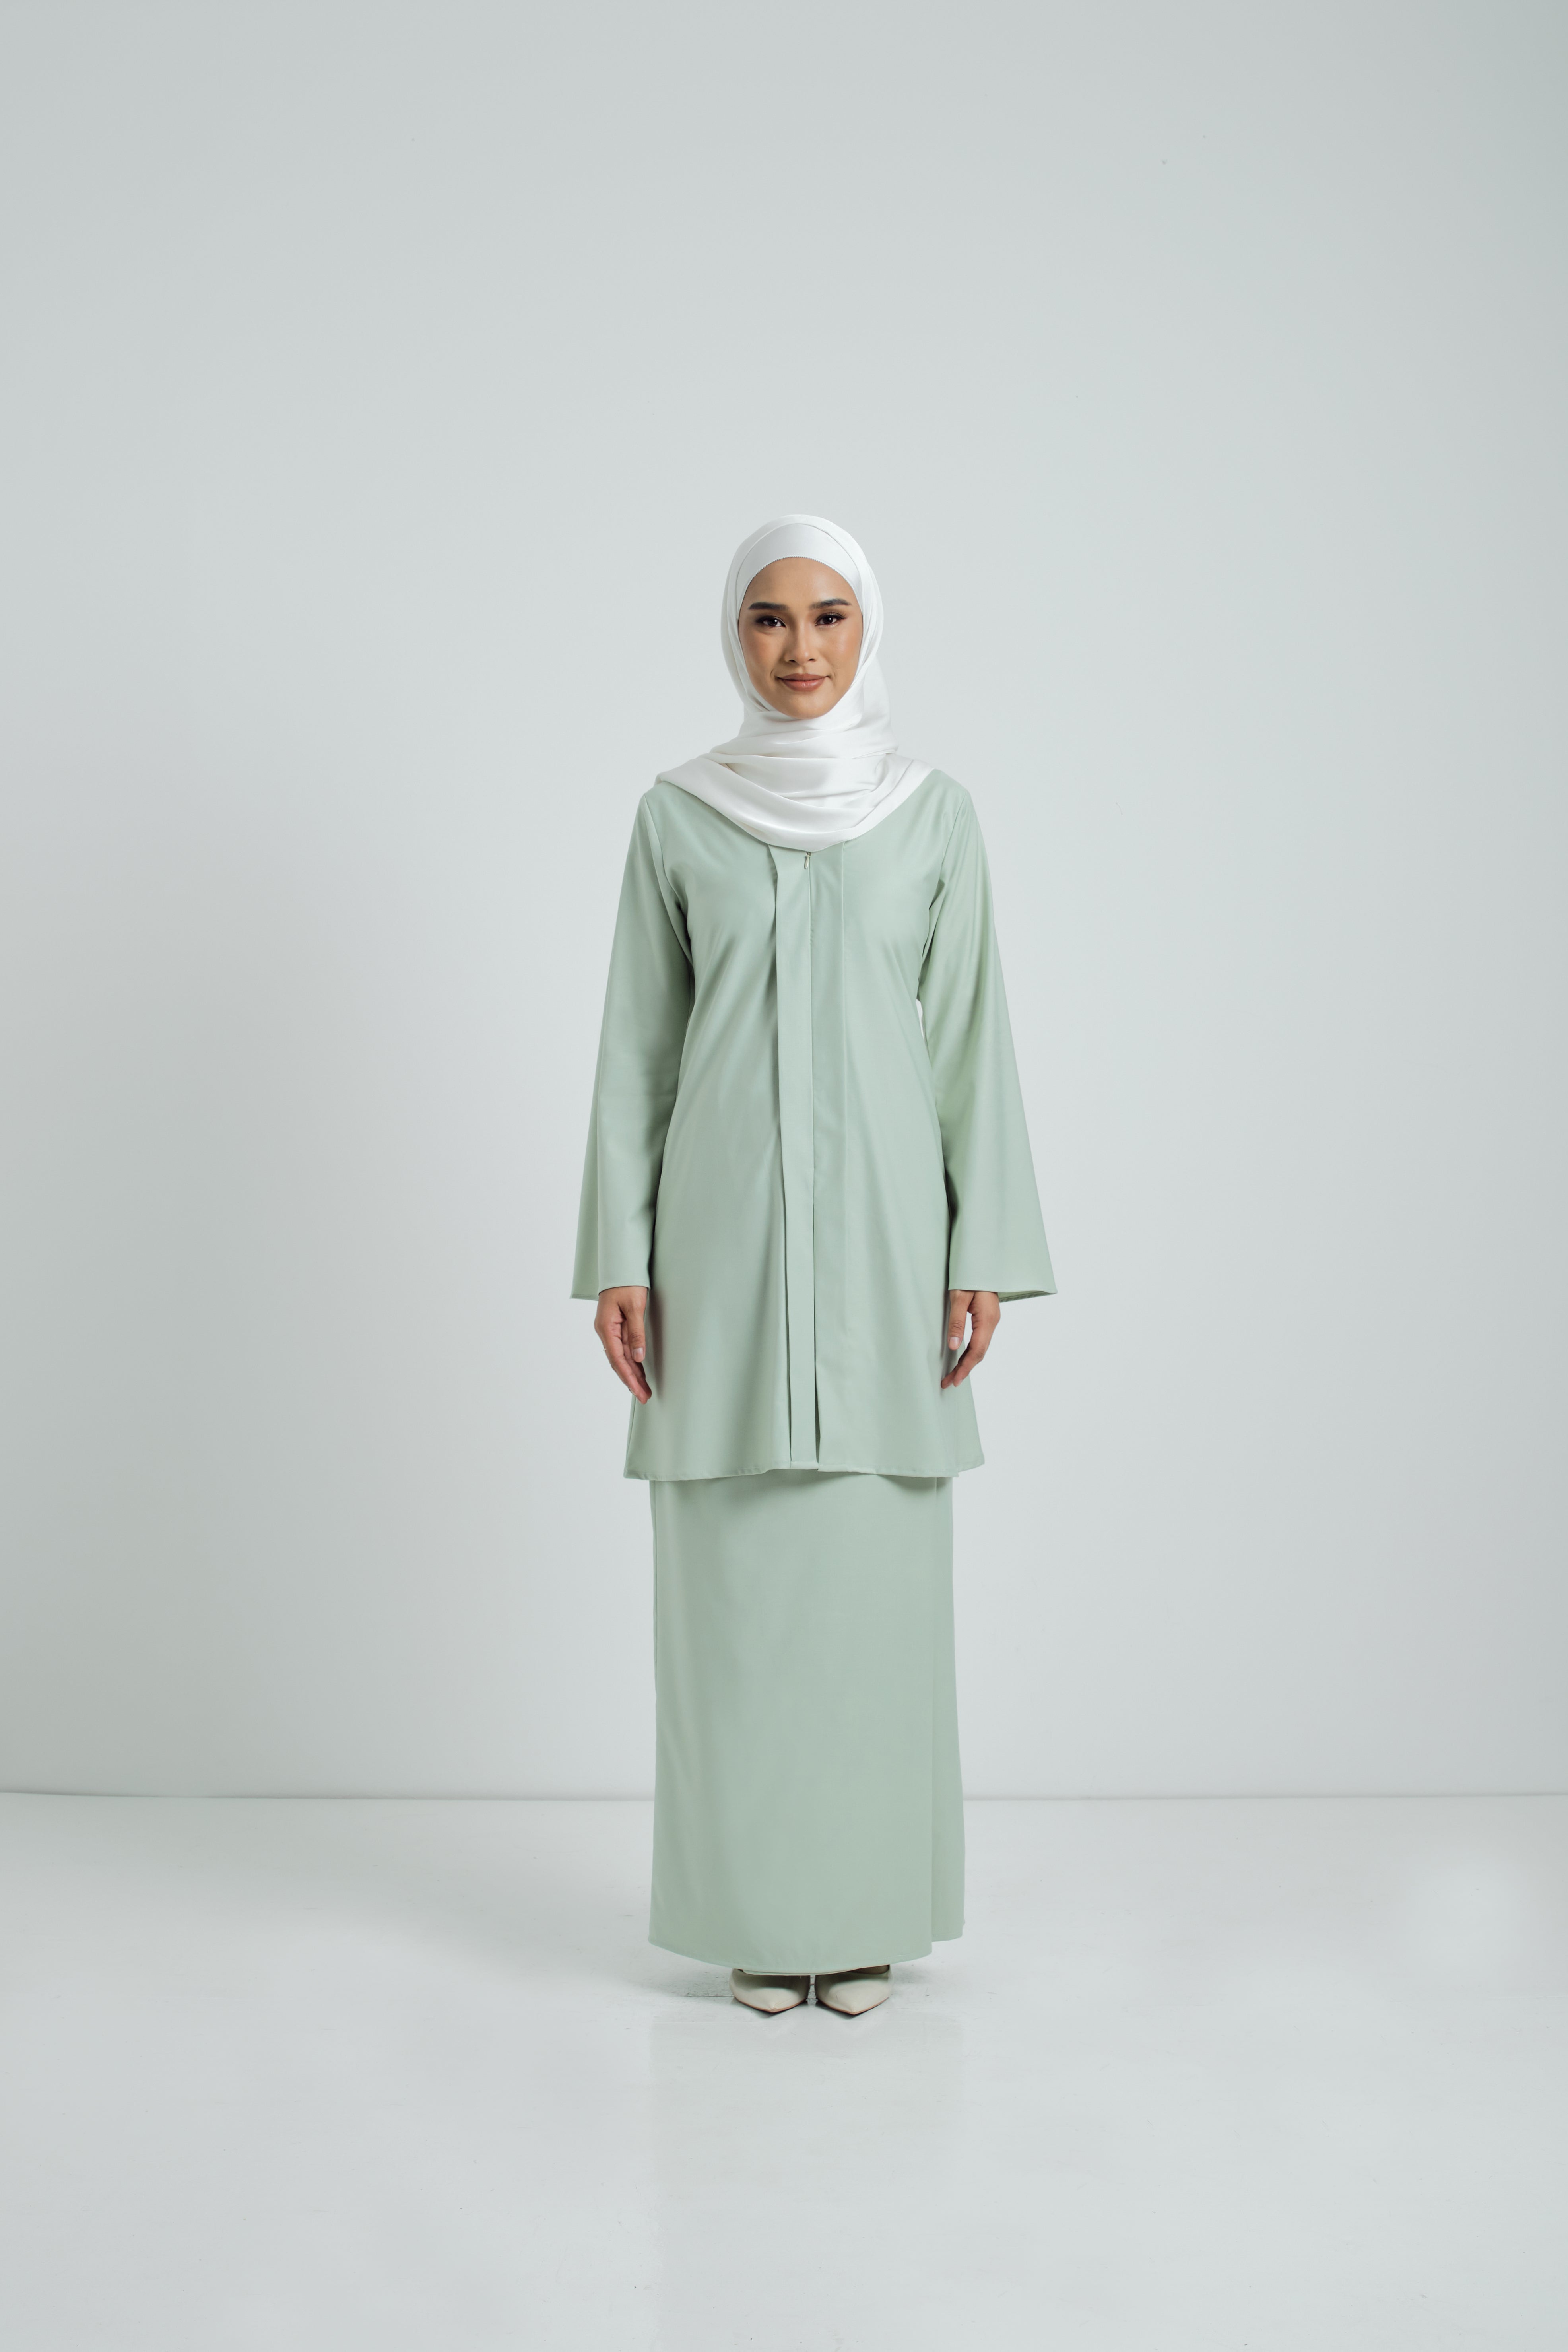 Patawali Baju Kebaya - Mint Green